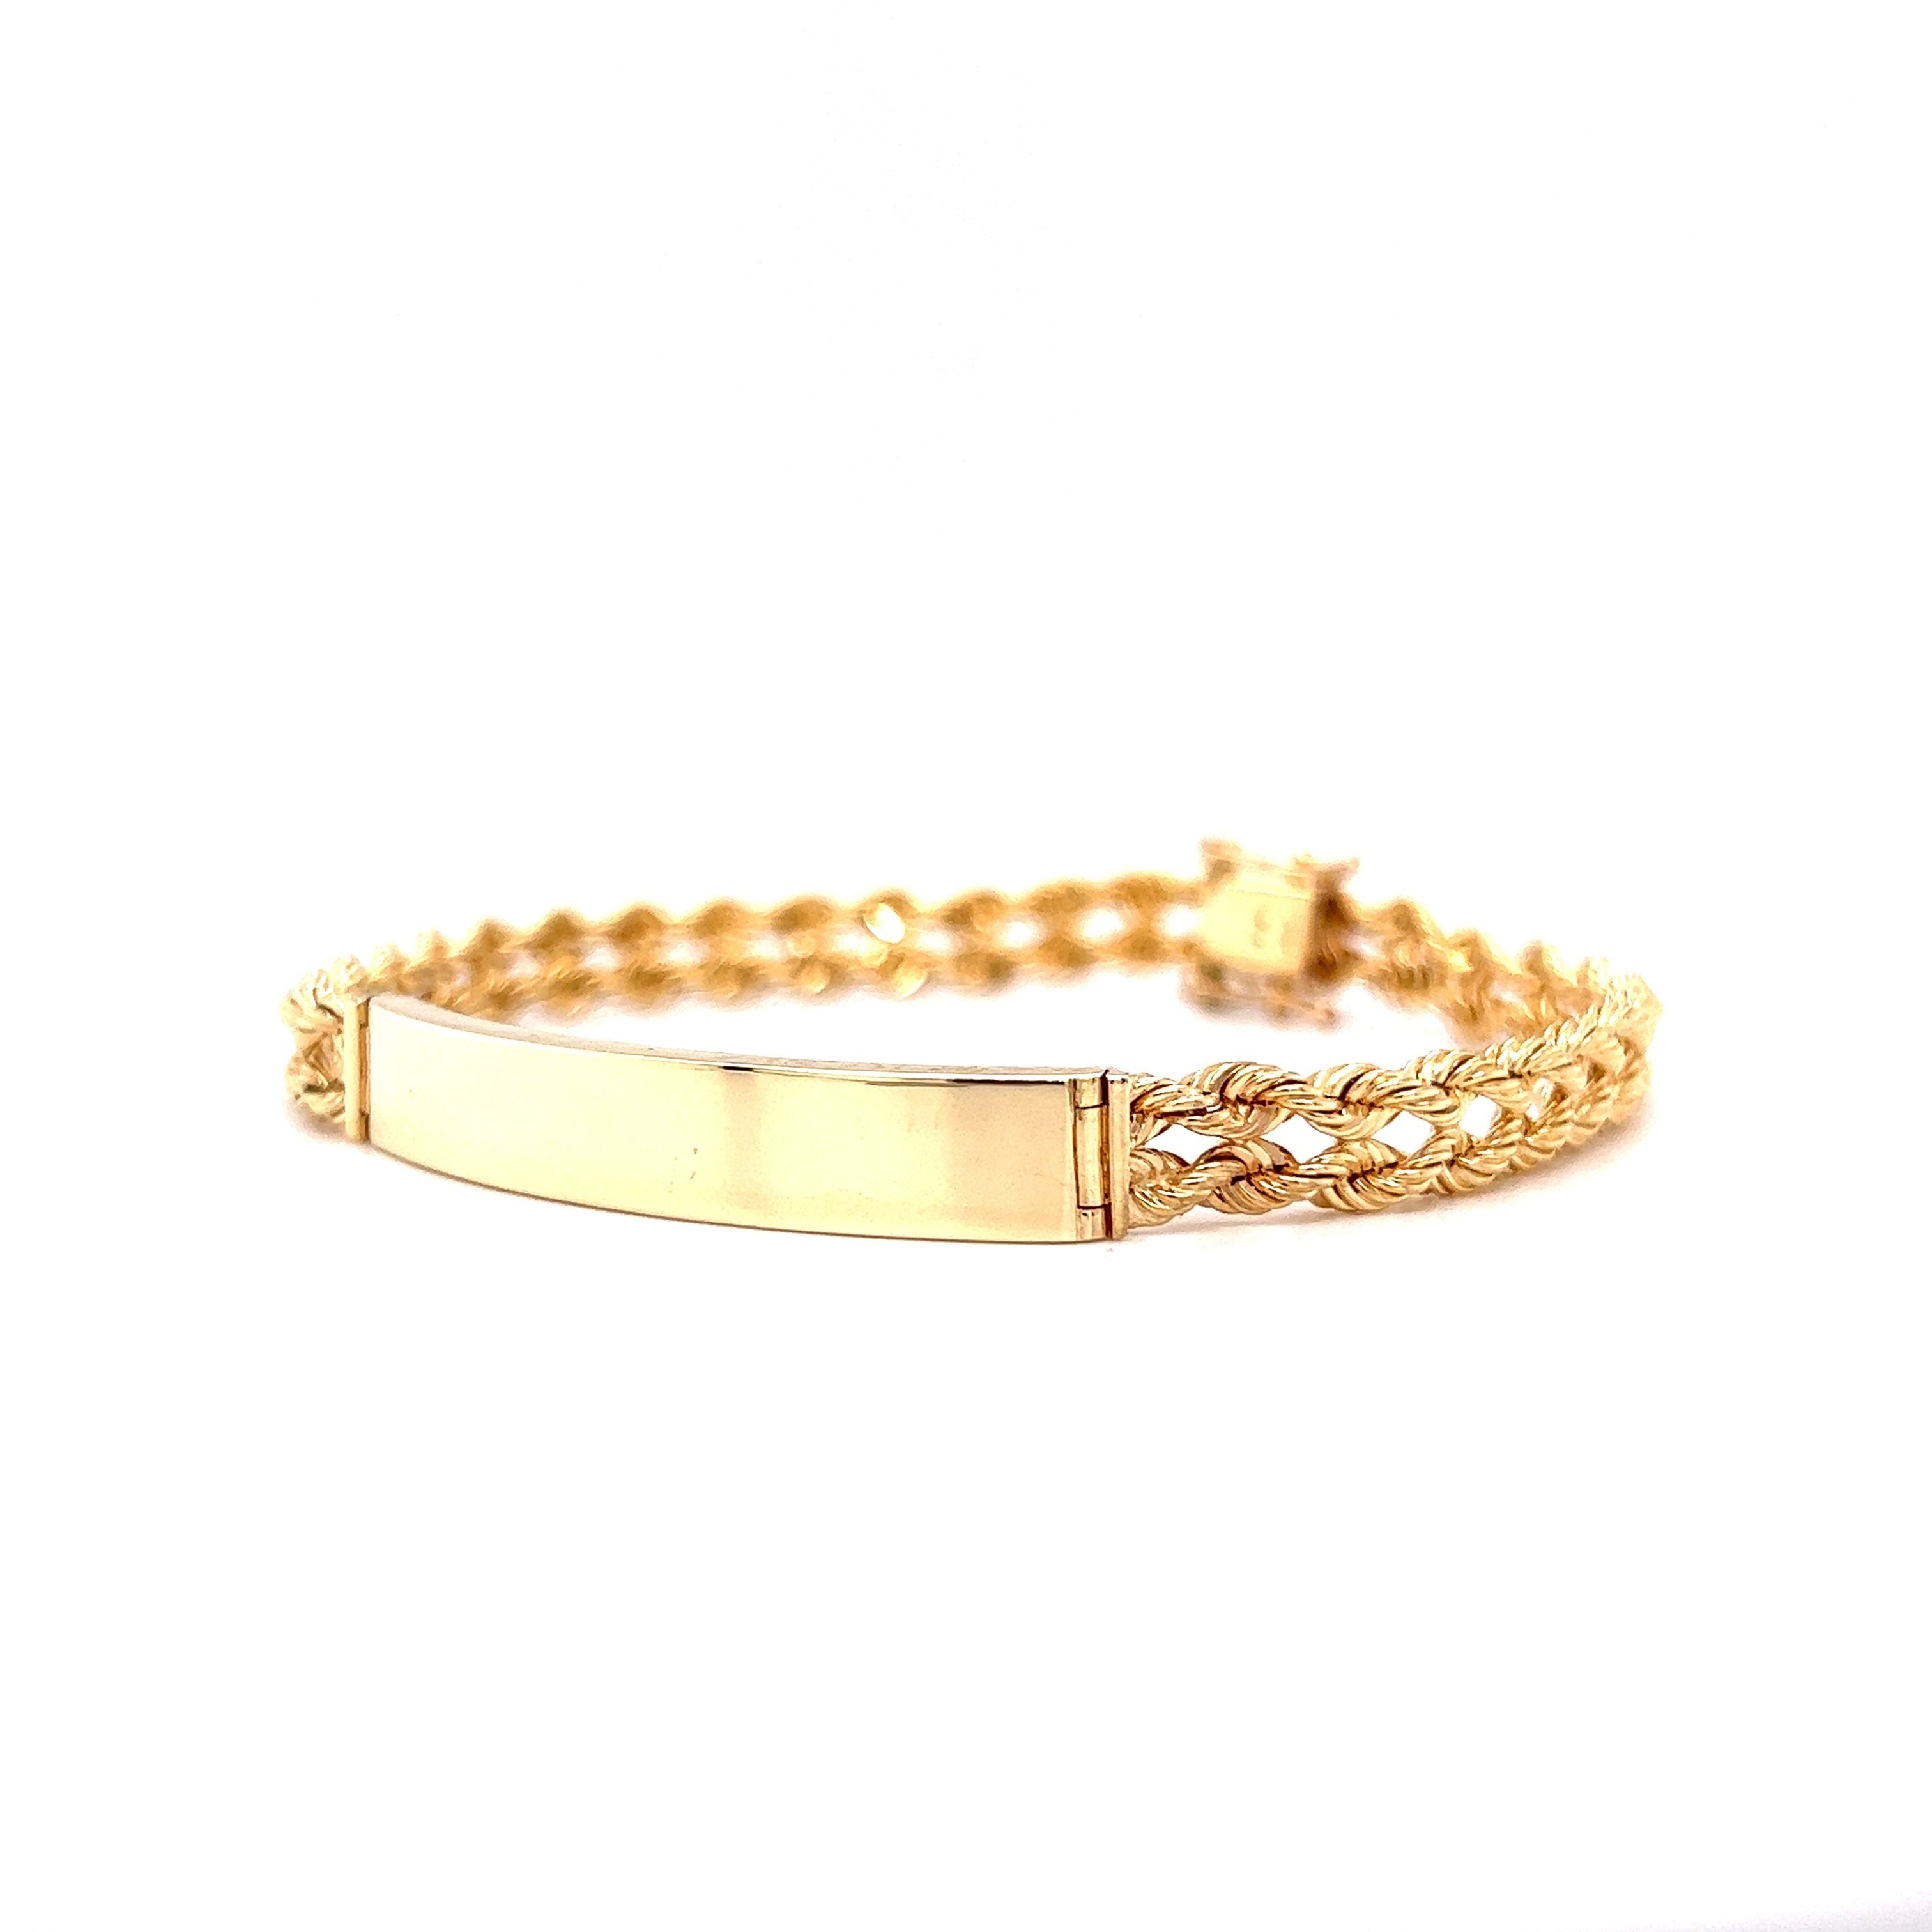 14k solid Y. gold name plate bracelet 8 1/4